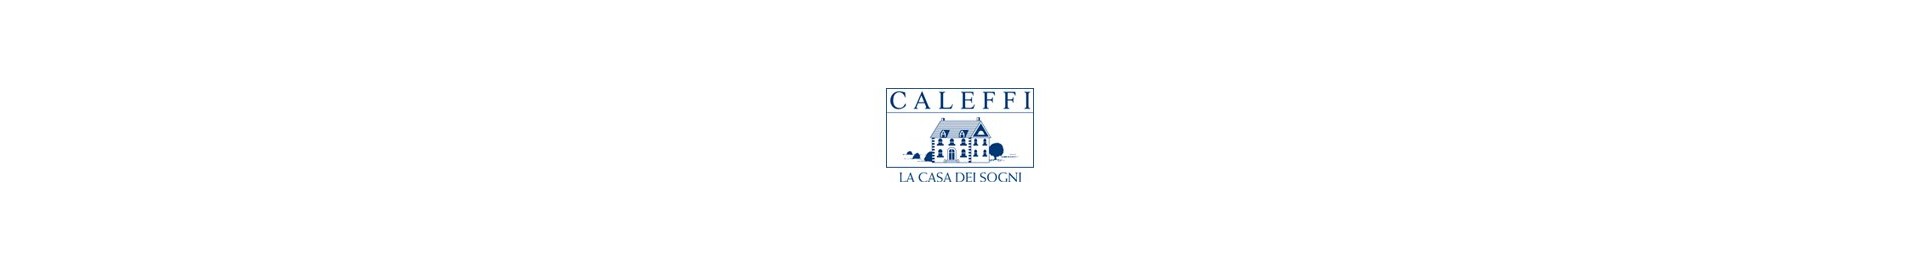 CALEFFI Scaldotti e lenzuola - Raso line L.F.D. Home